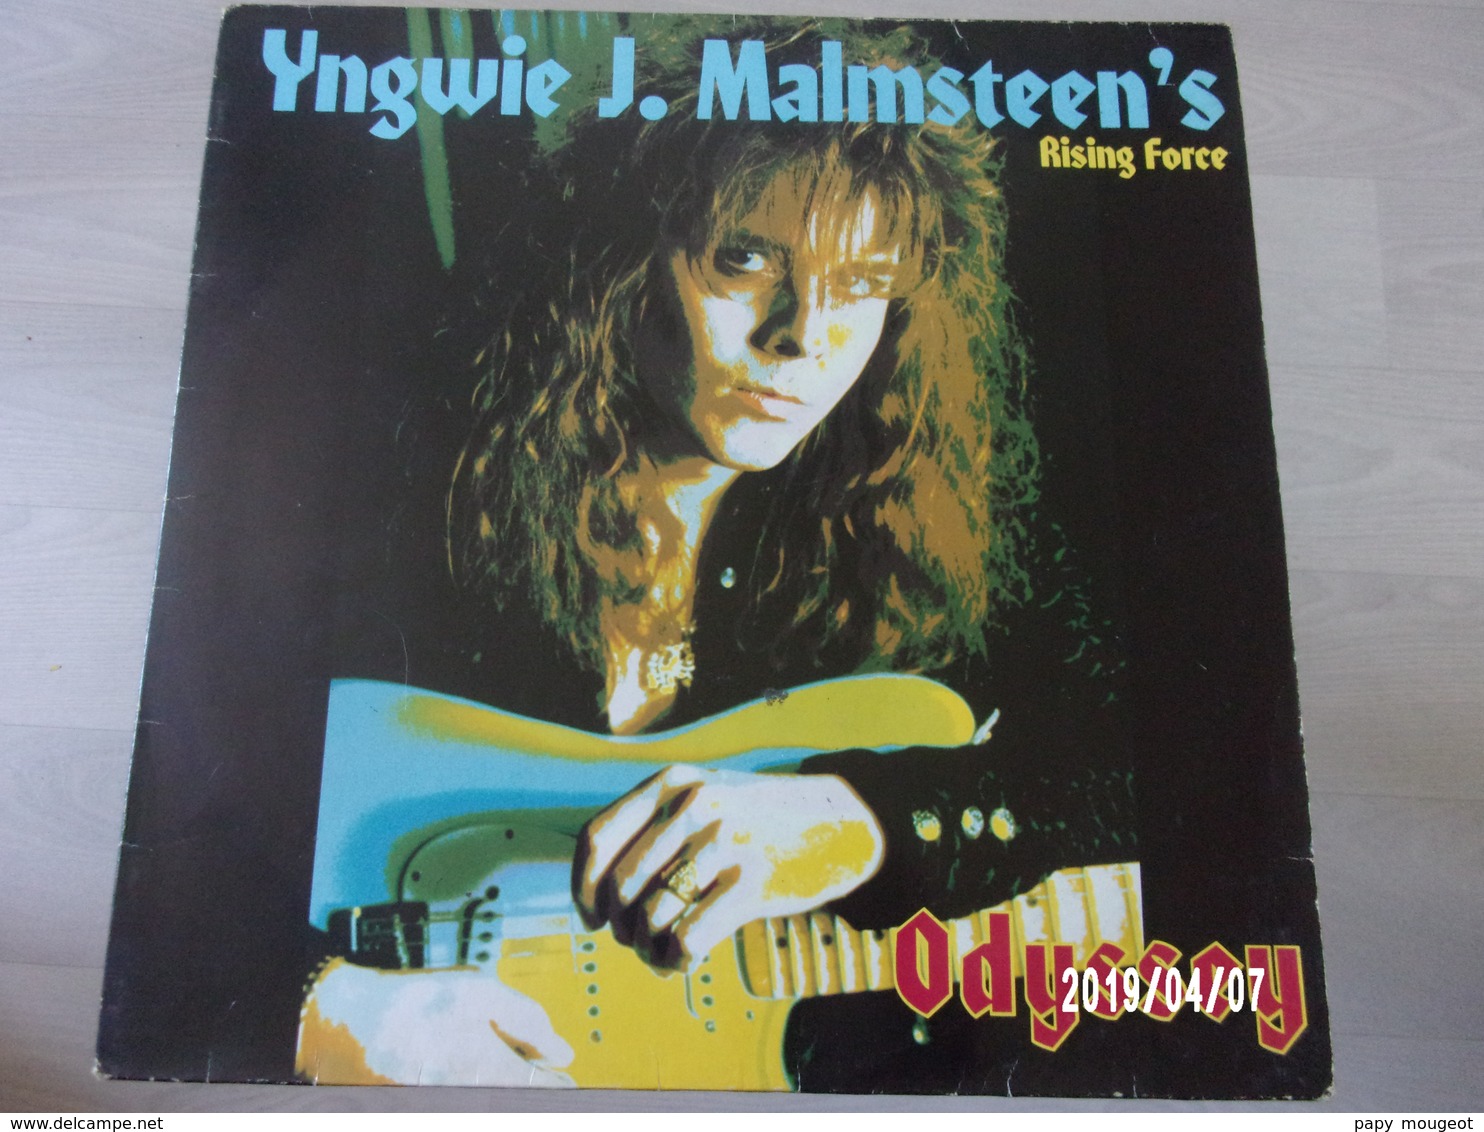 YNGWIE J. MALMSTEEN'S RISING FORCE - ODYSSEY - 1988 - Hard Rock & Metal